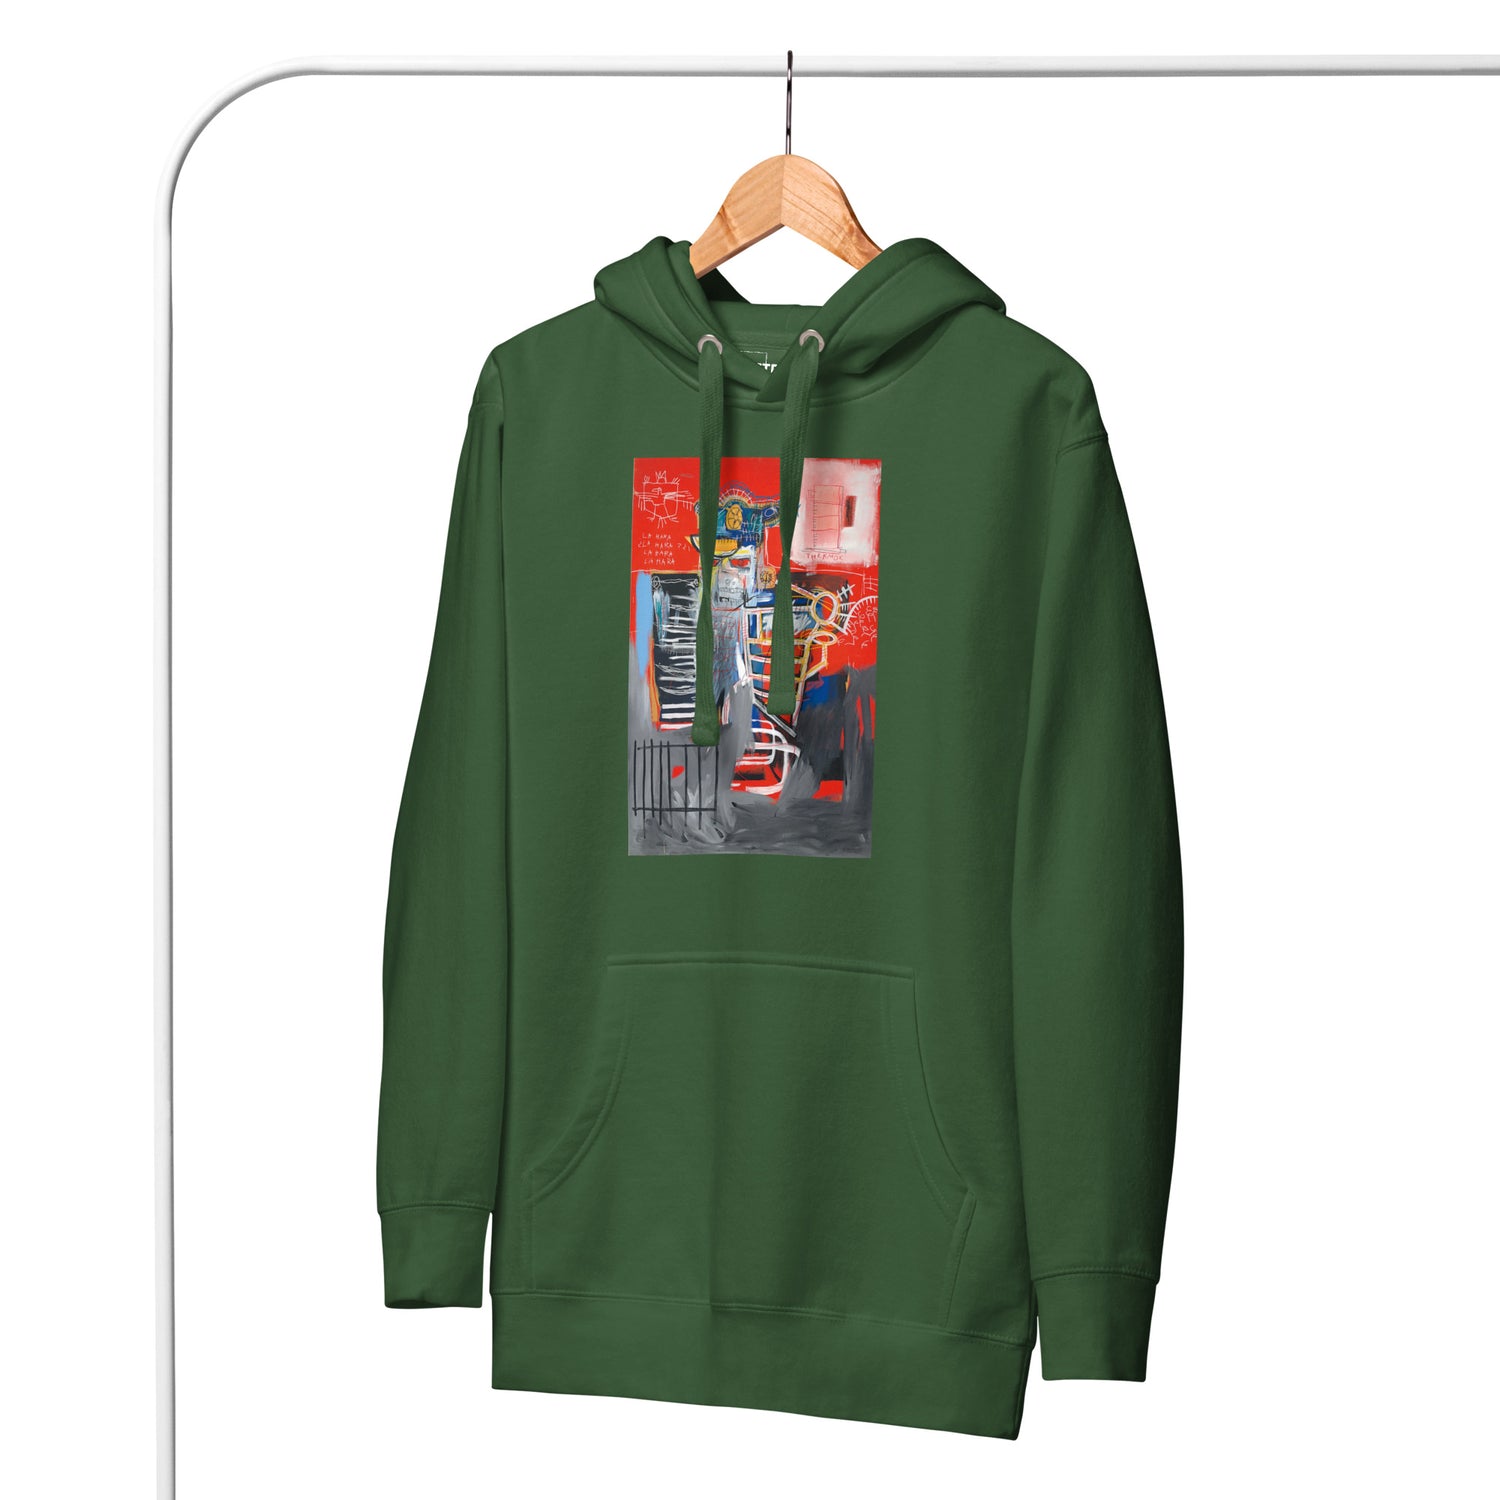 Jean-Michel Basquiat "La Hara" Artwork Printed Premium Streetwear Sweatshirt Hoodie Forest Green